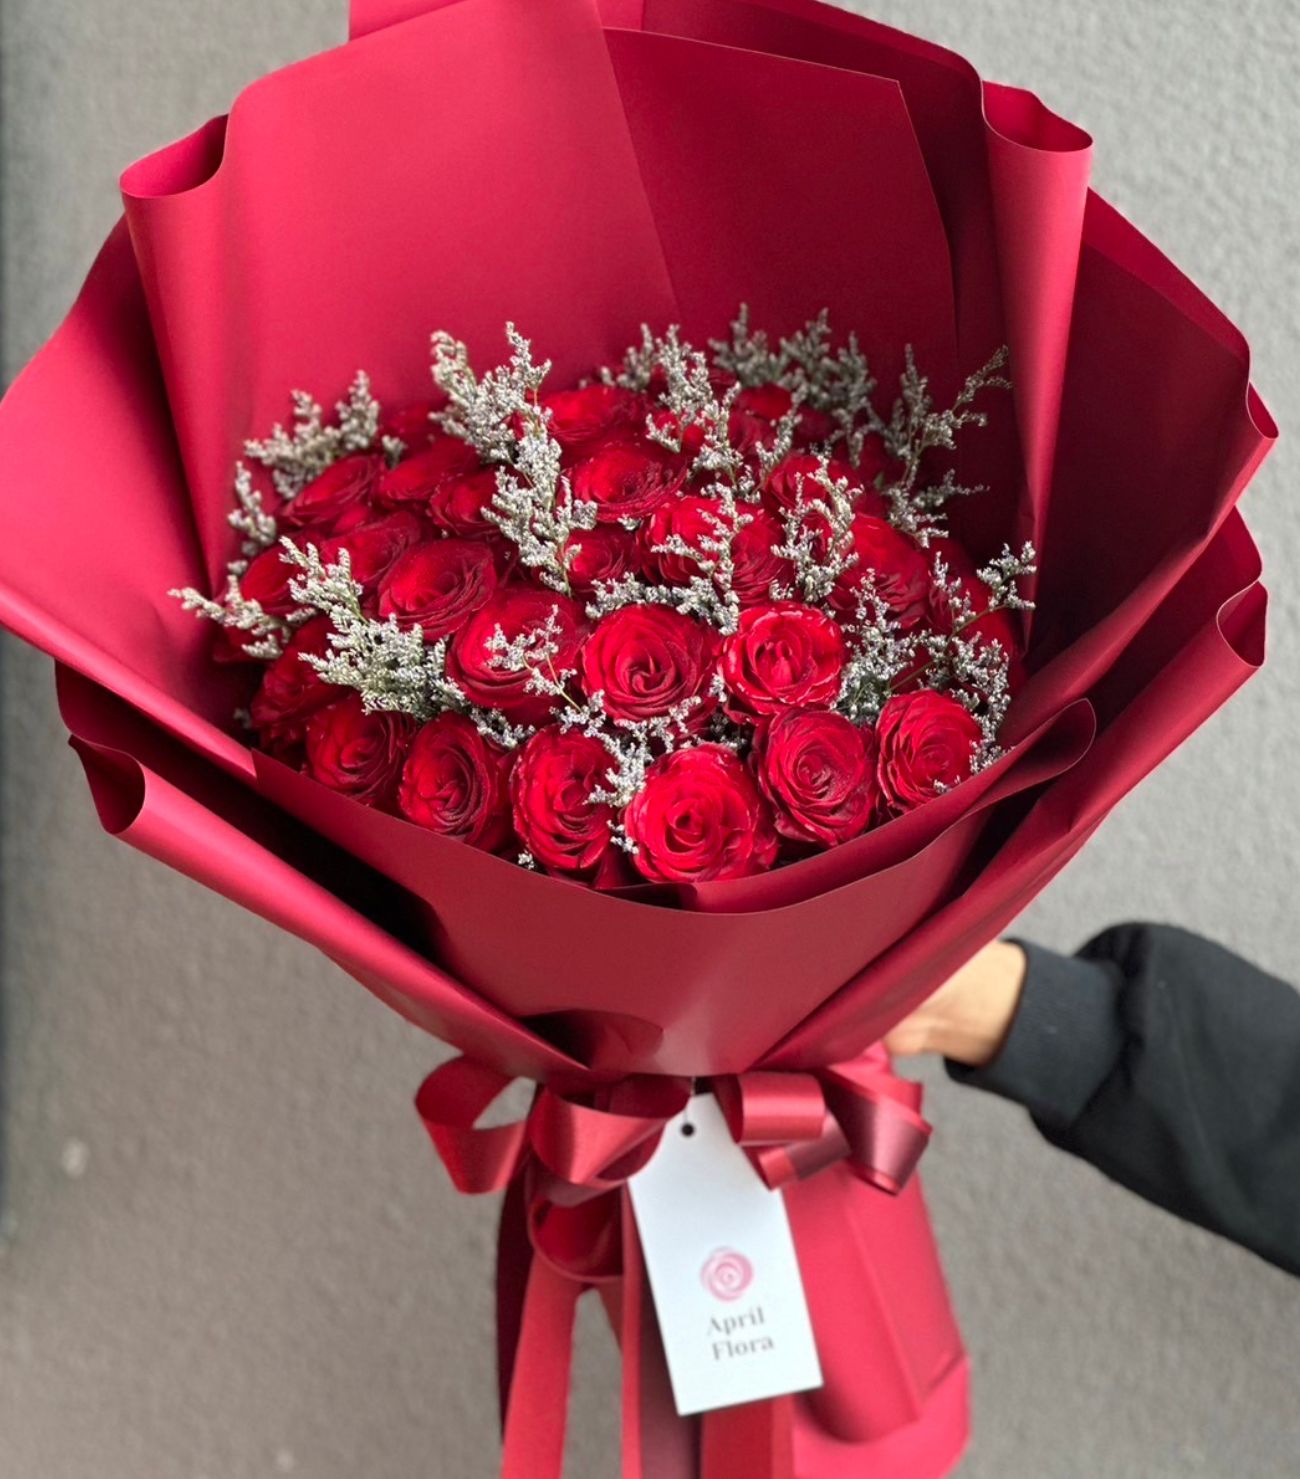 ช่อดอกกุหลาบแดง 30 ดอก "My Heart"